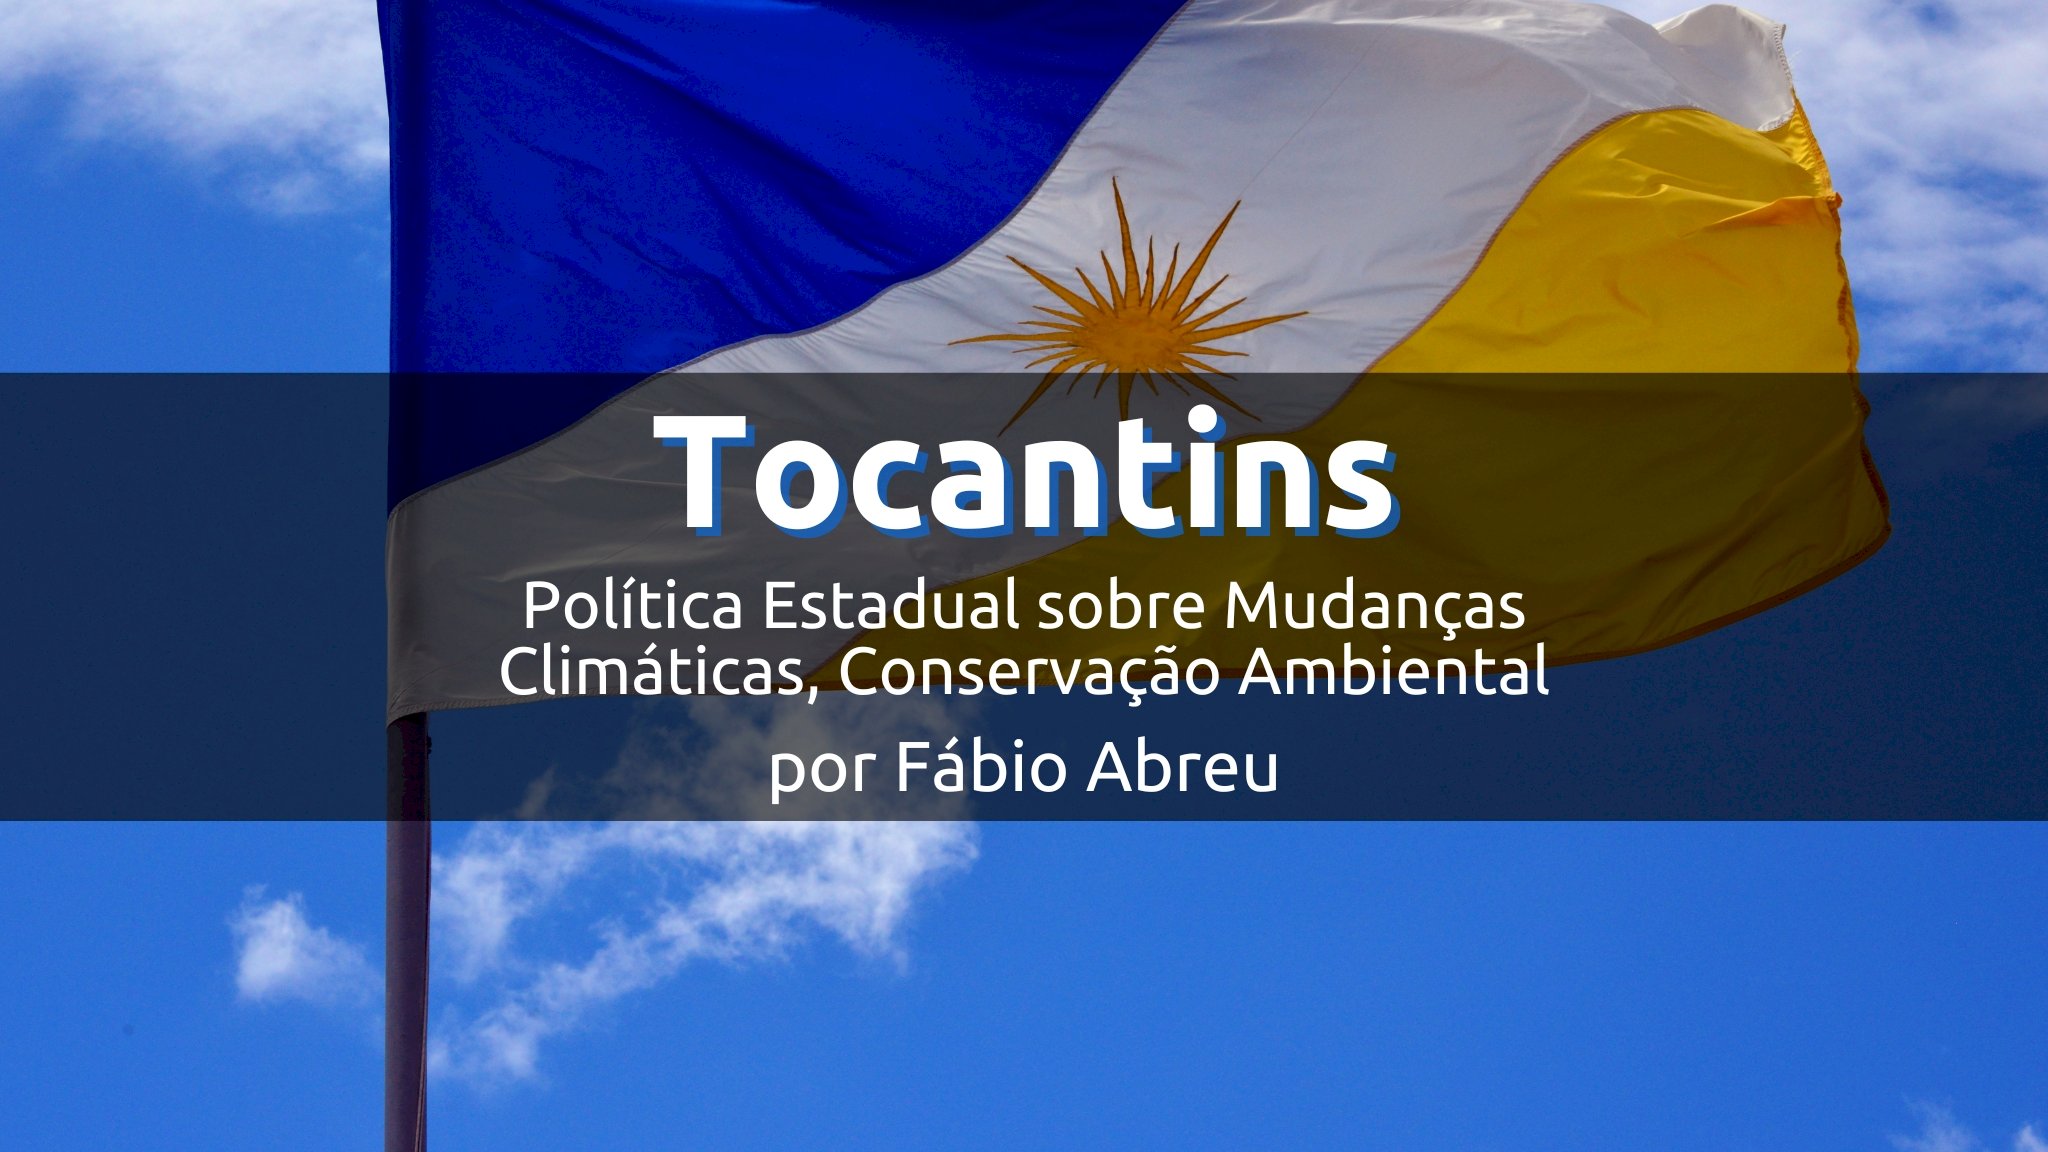 Tocantins e a Política Estadual